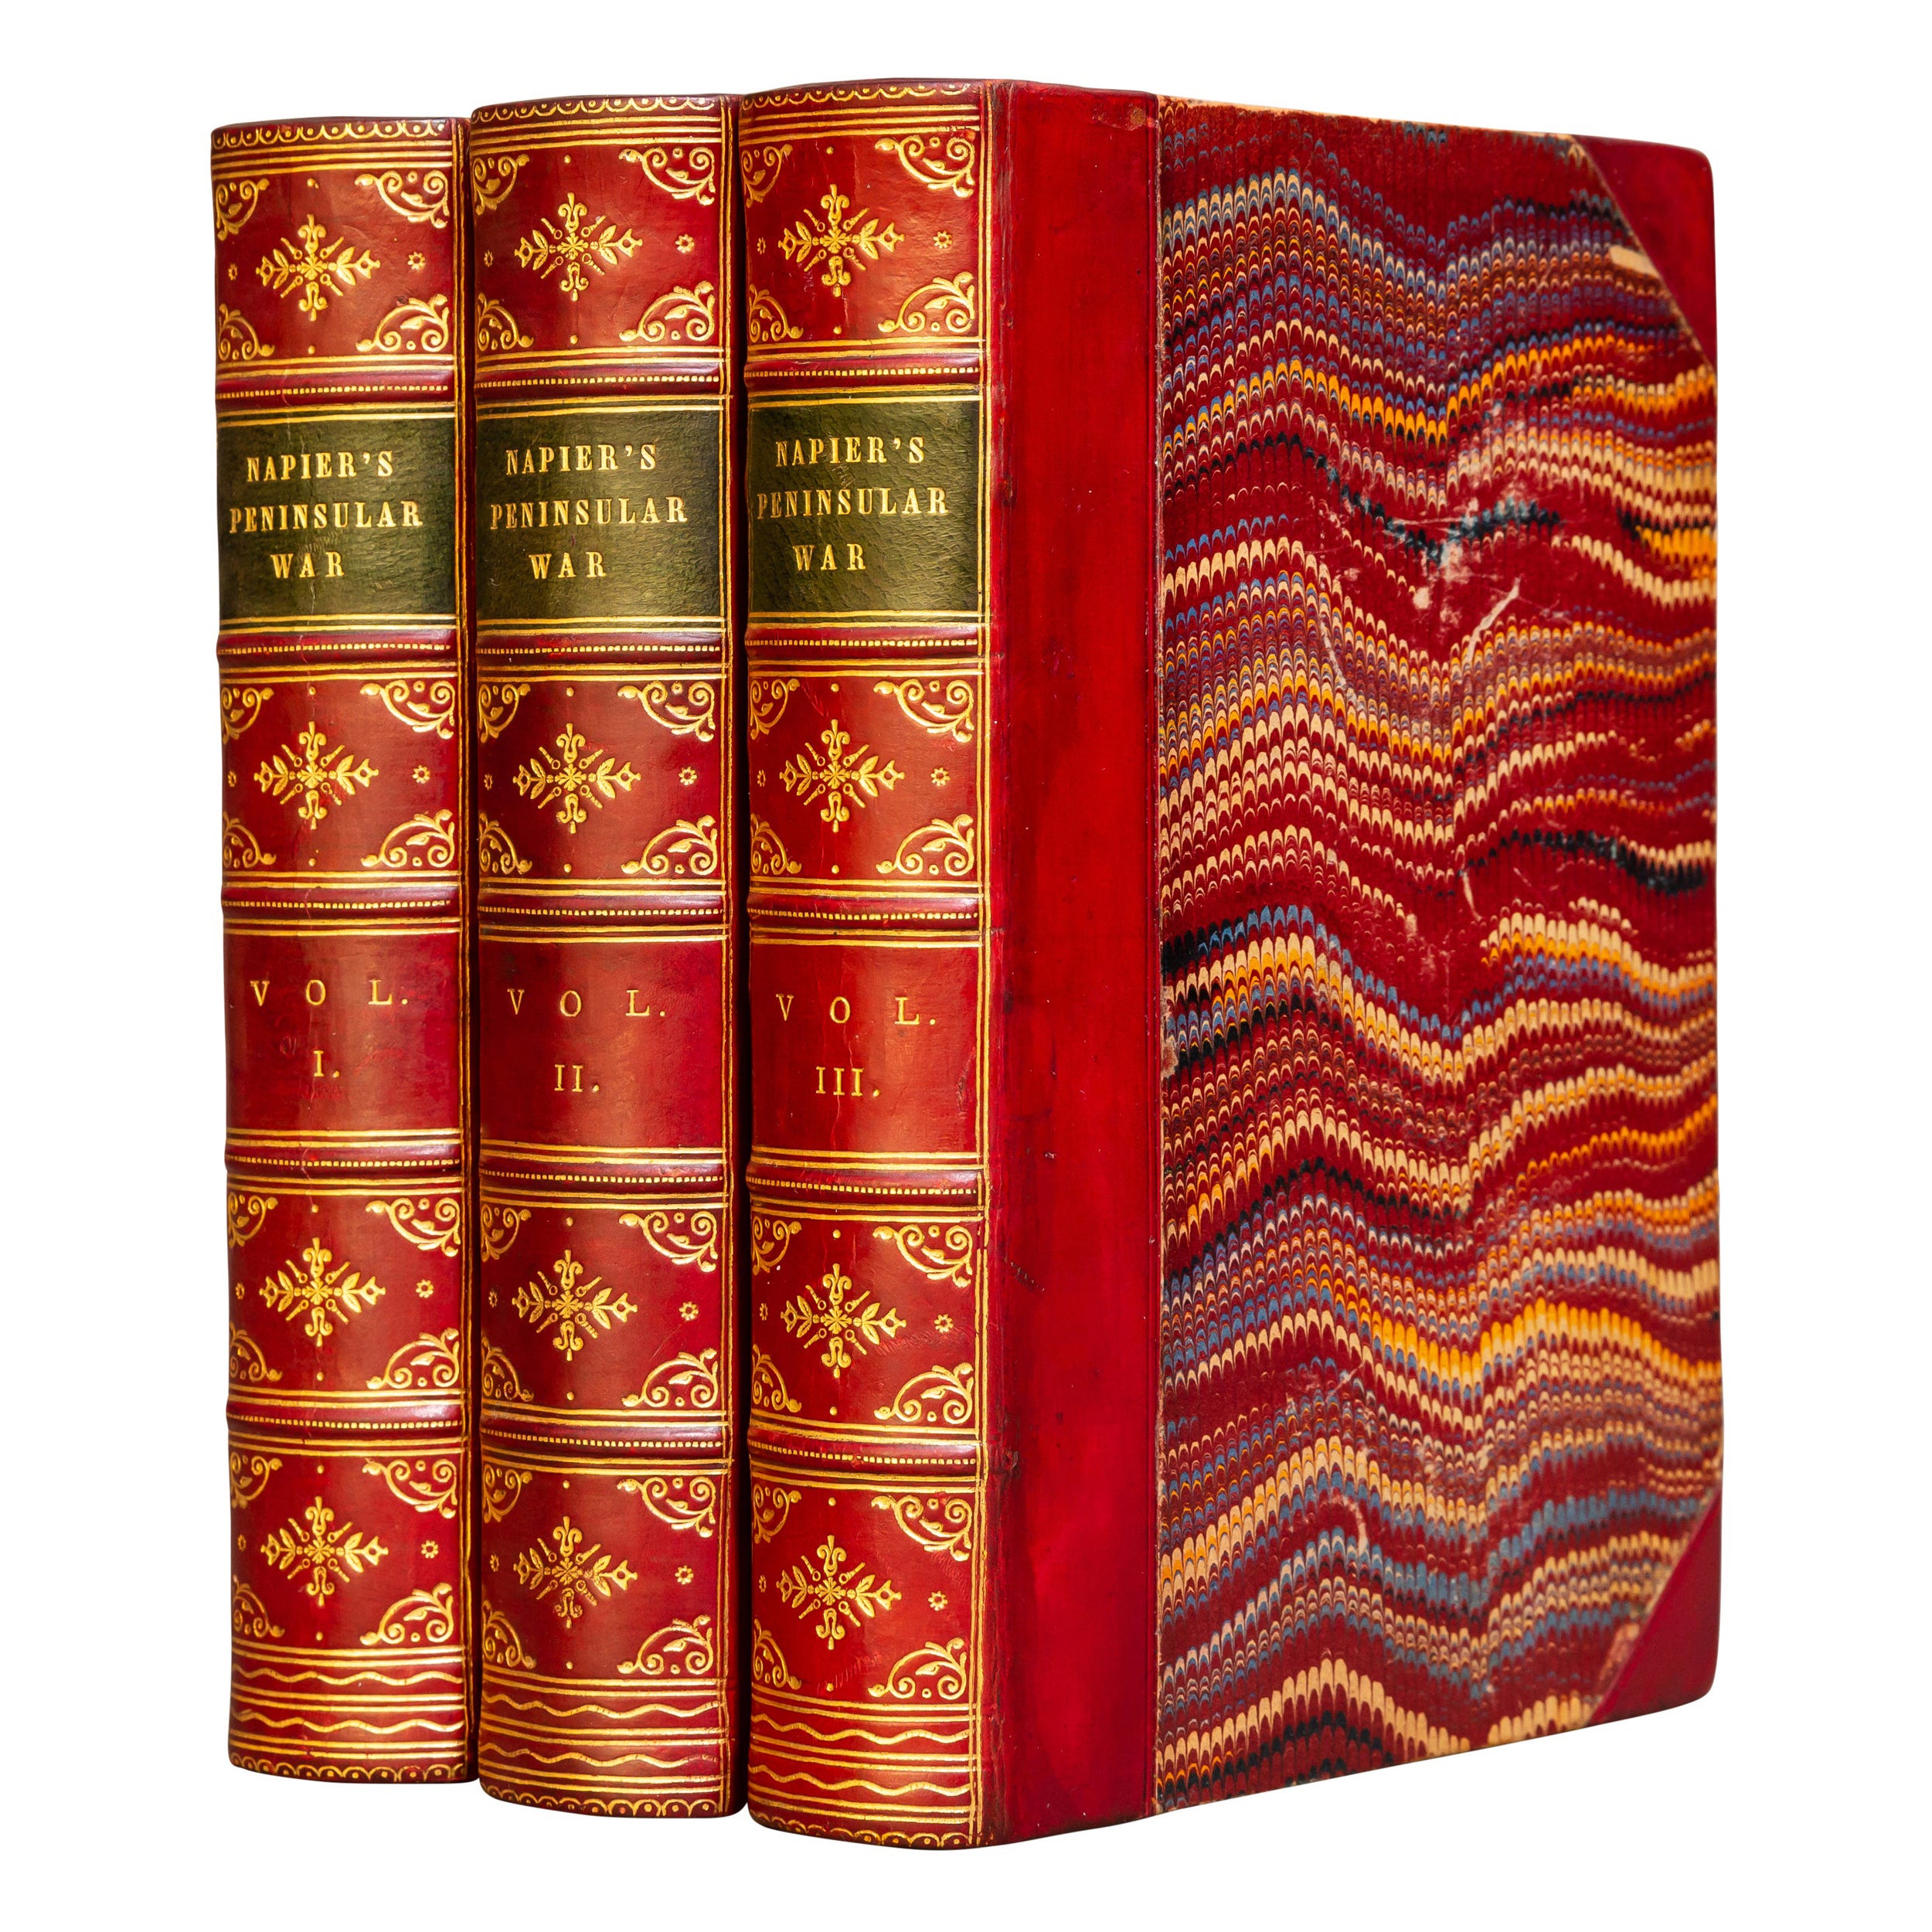 Buchreihen" 3 Bände. W. F. P. Napier, Geschichte des Halbinselkrieges